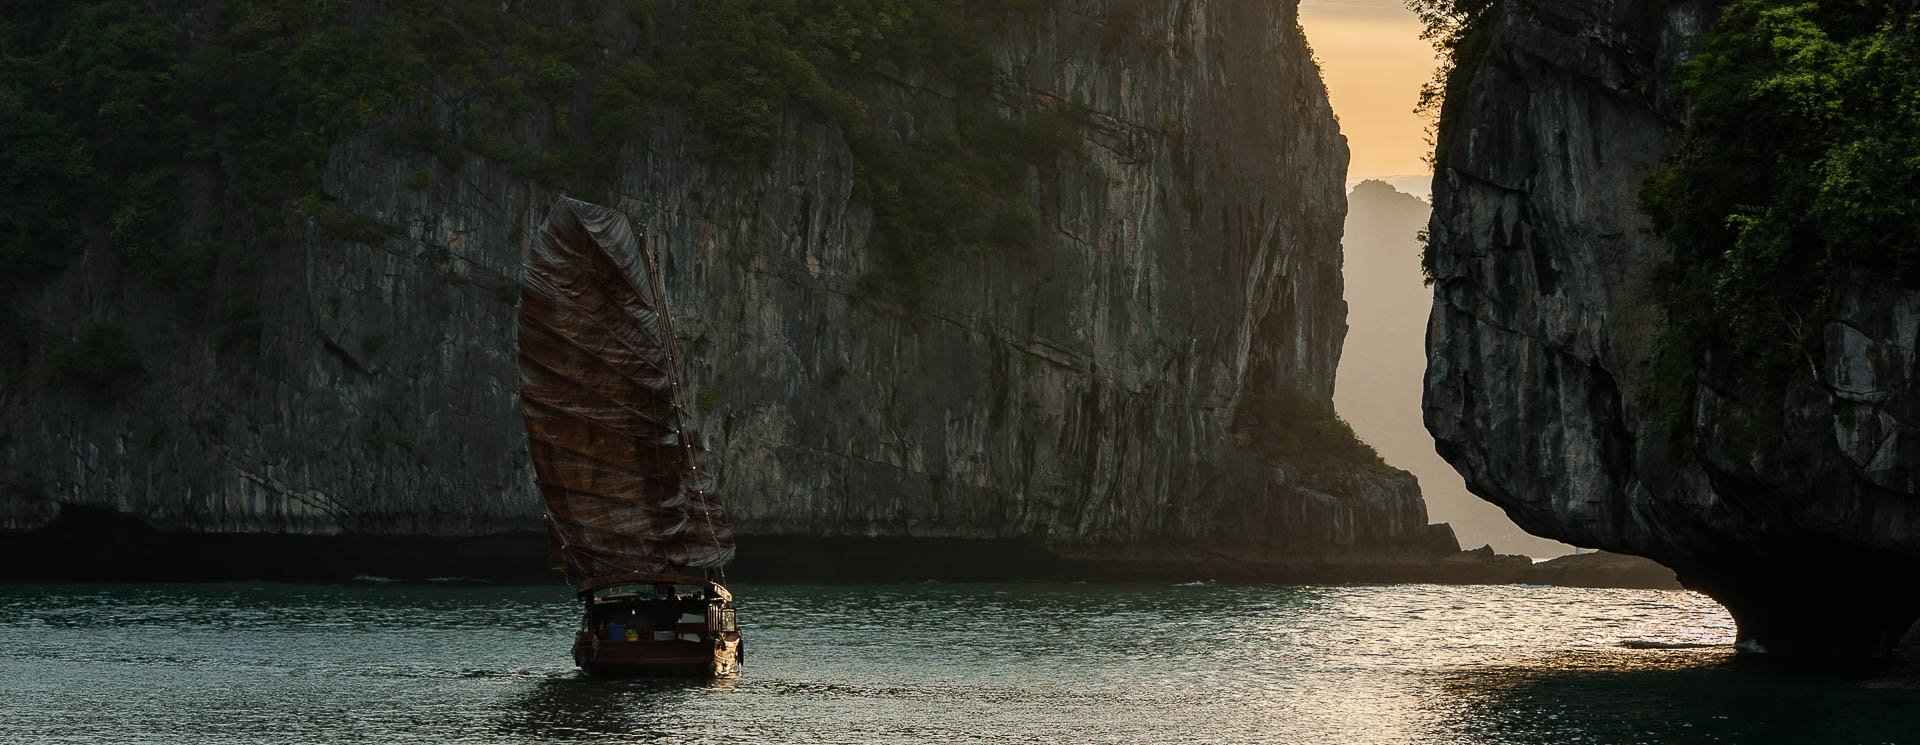 voyage photo vietnam